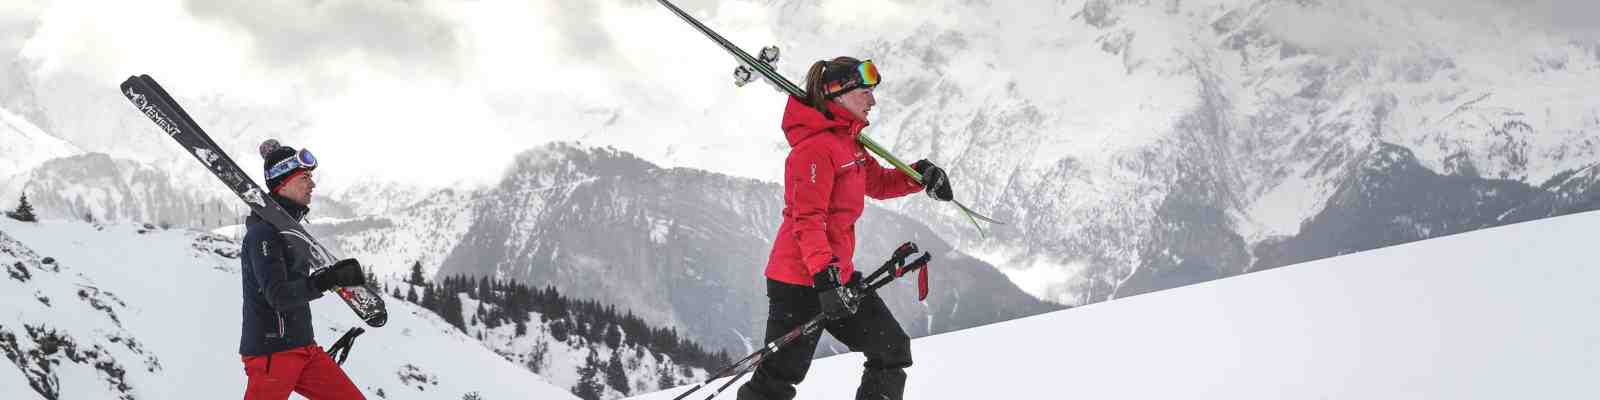 Quand partir skier en 2021?